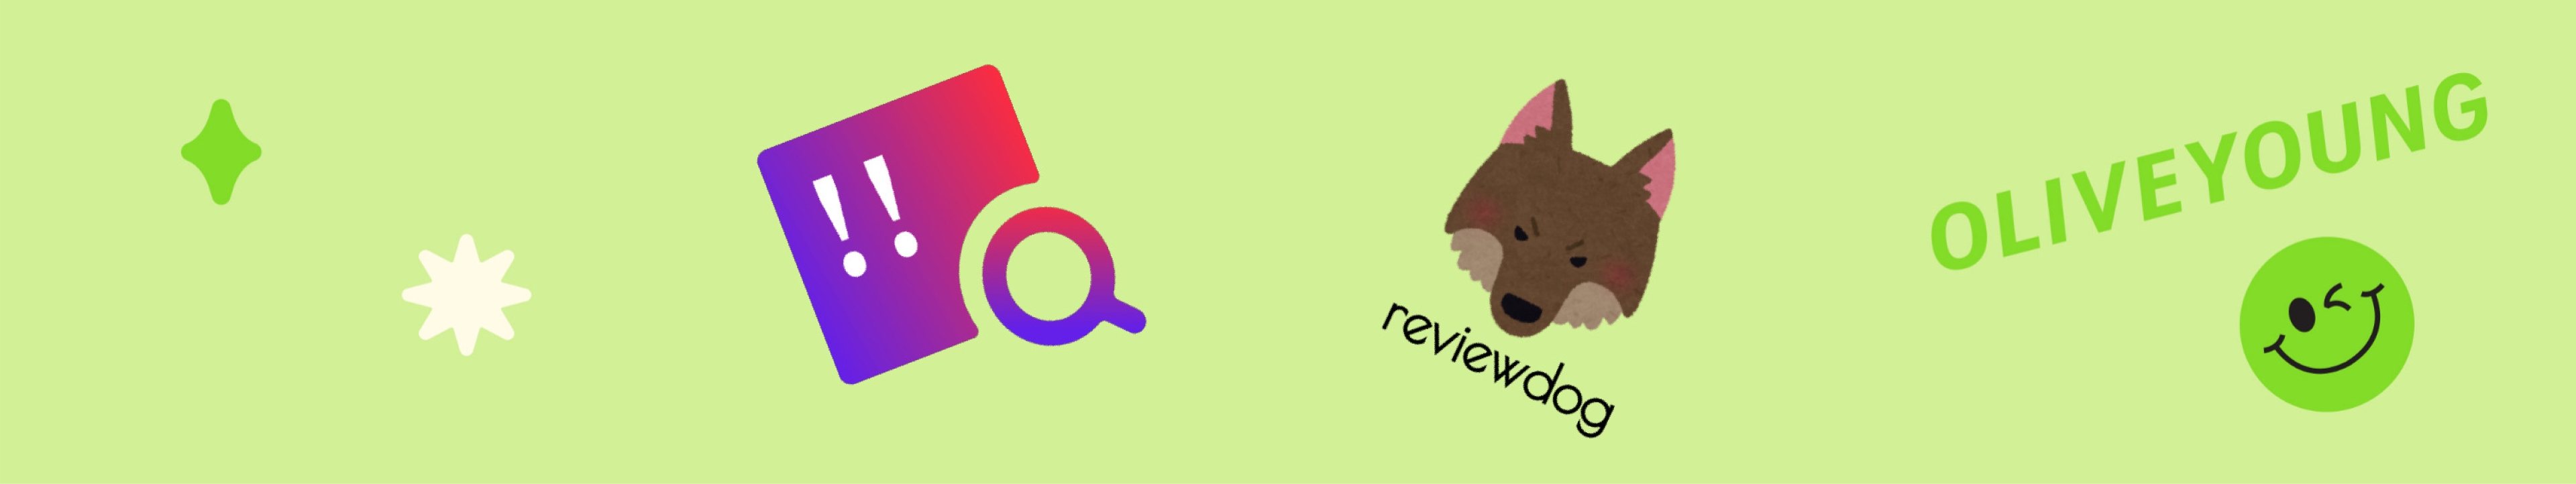 올리브영 테크블로그 포스팅 detekt와 reviewdog으로 코드 품질 향상